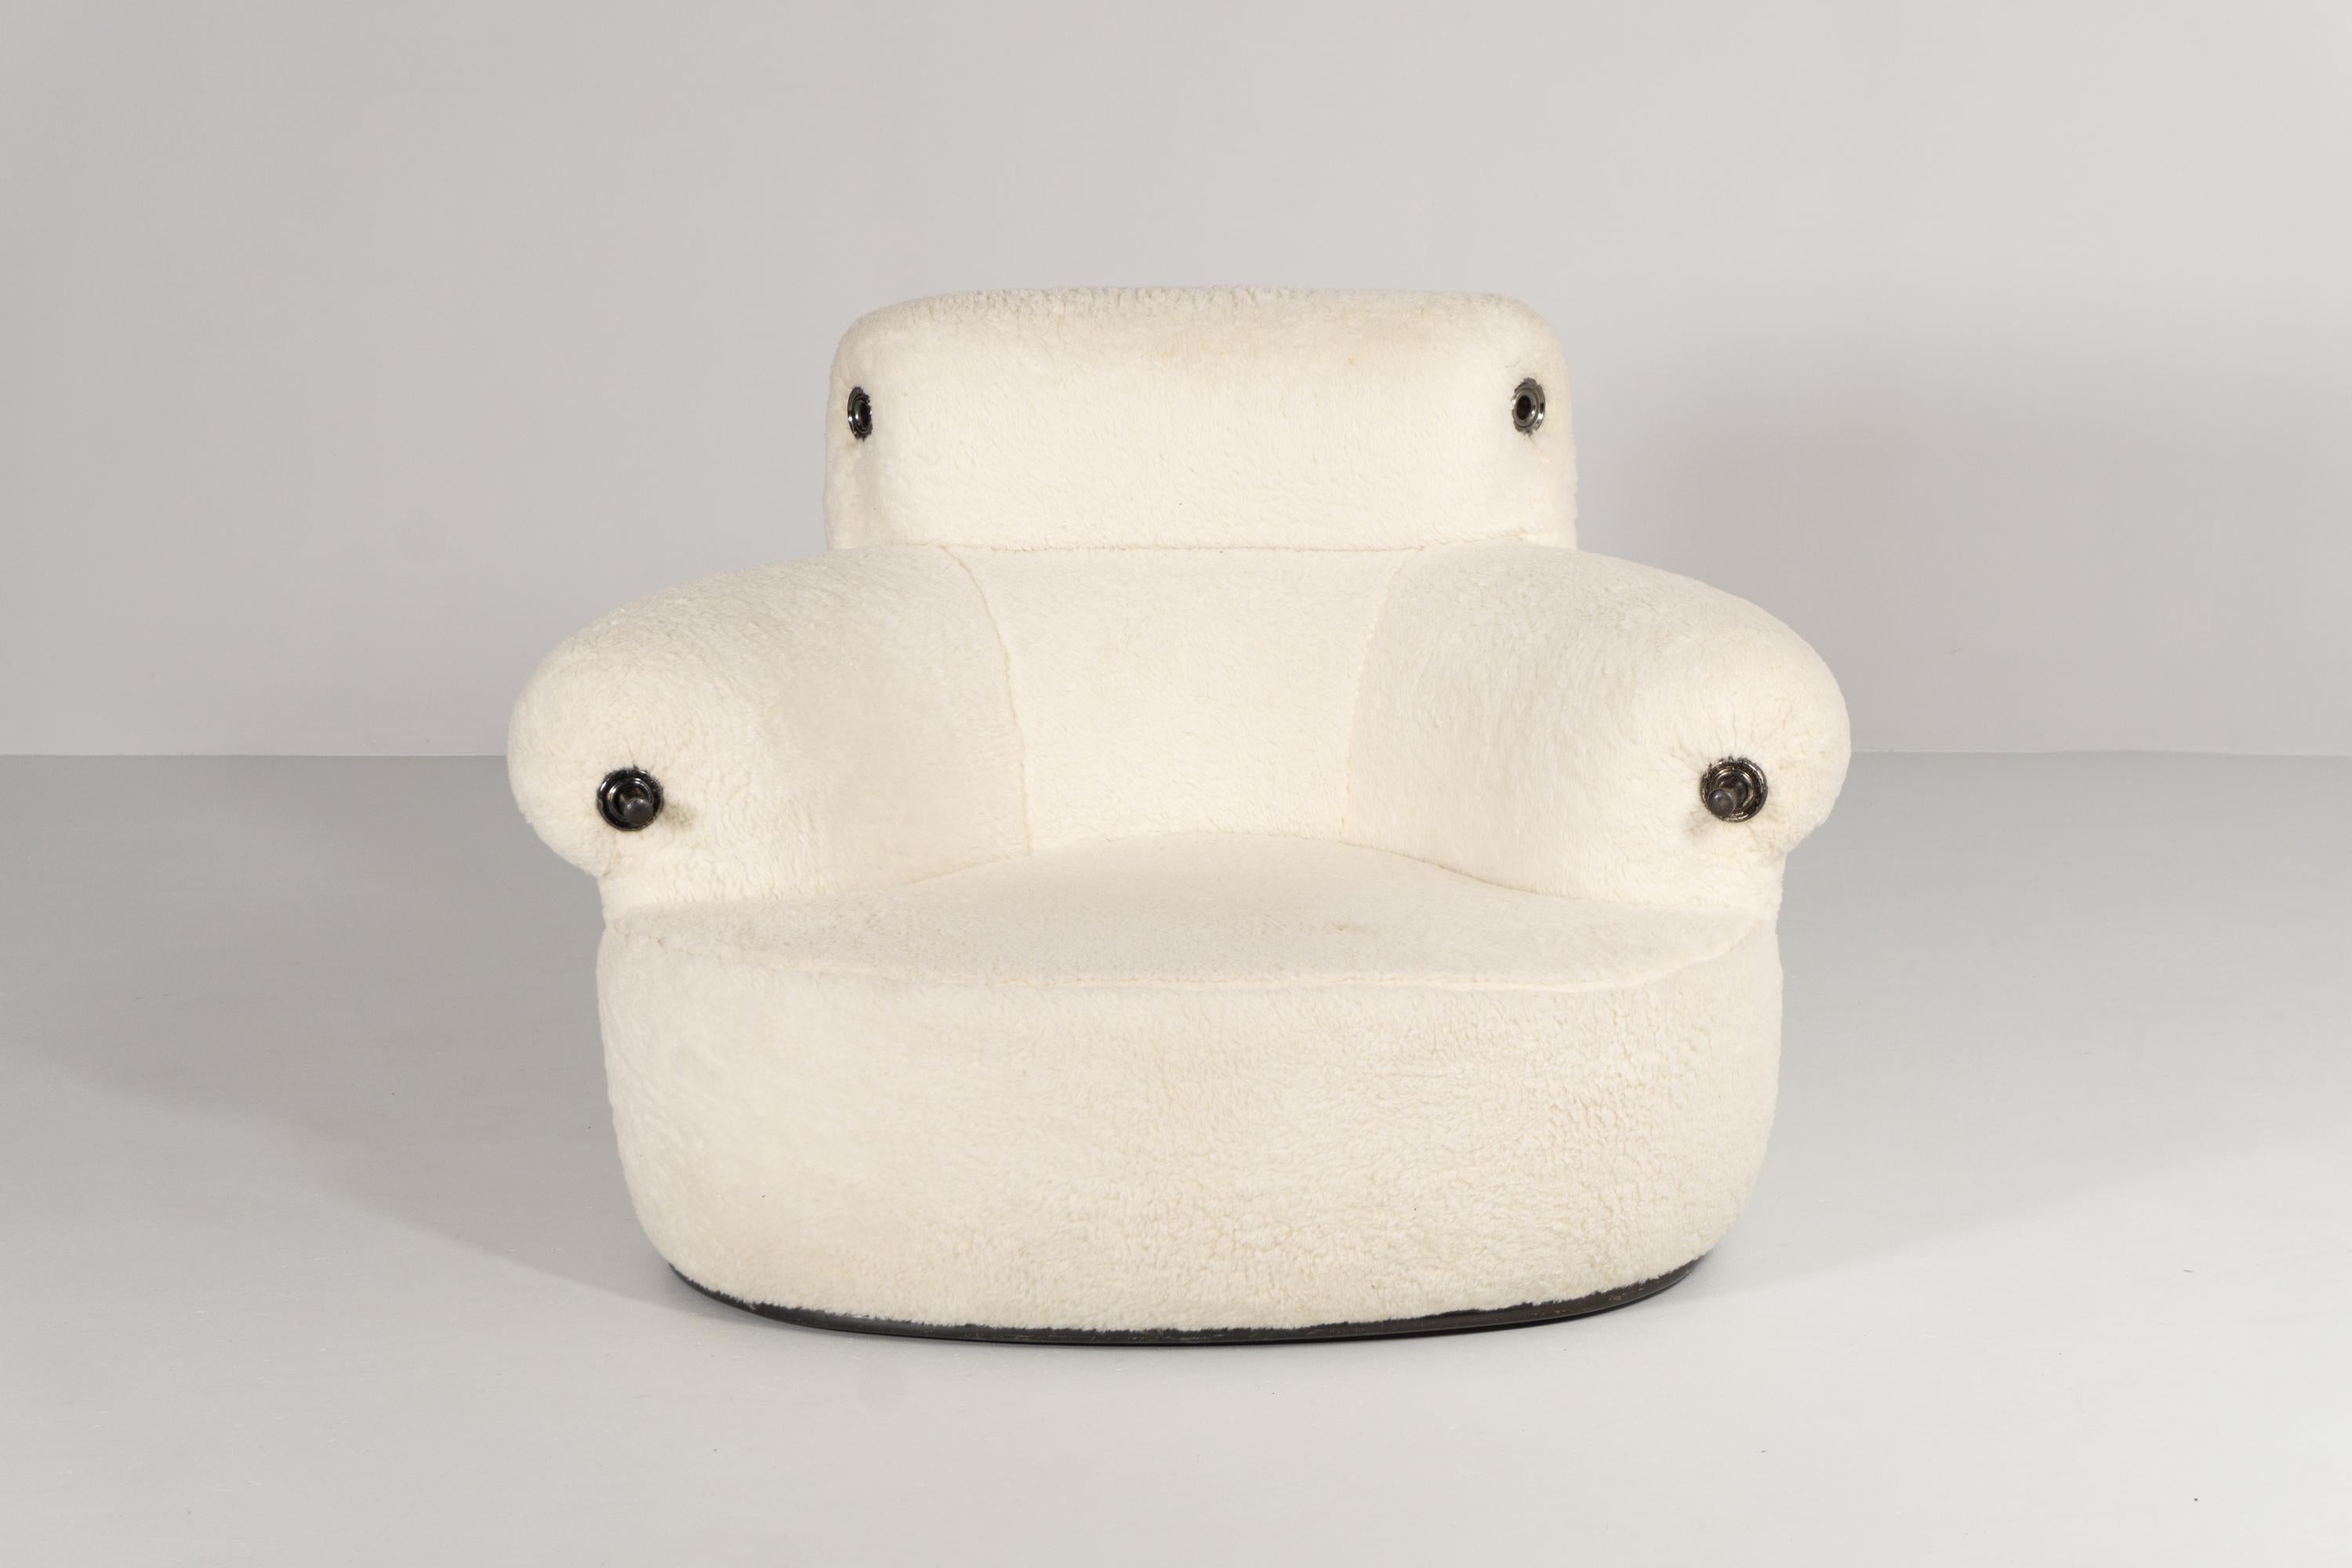 Dieser außergewöhnliche und einzigartige Sessel aus Kunstfell wurde vom Mailänder Architekten und Designer Luigi Caccia Dominioni (1913-2016) entworfen.
Für Azucena entwarf er 1973 den Sessel Toro. Sessel aus Stahlrohr mit geformter